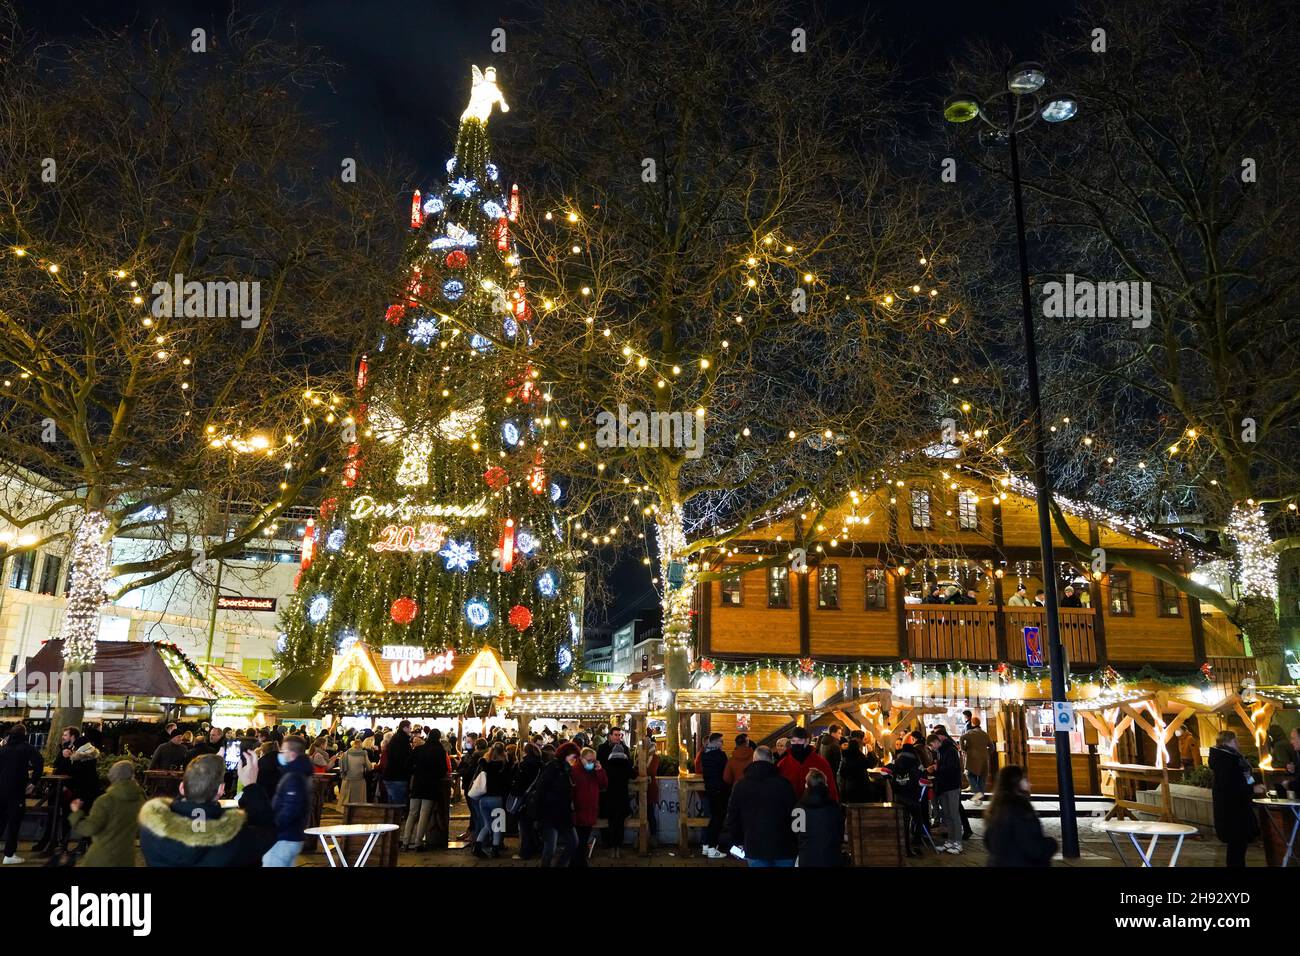 Dortmund, 3.12.2021: Der weltweit größte Weihnachtsbaum auf dem Dortmunder Weihnachtsmarkt 2021, der wegen der Corona-Pandemie in der vierten Welle unter 3G-Maßnahmen (geimpft, genesen und getestet) wird durchgeführt Stockfoto